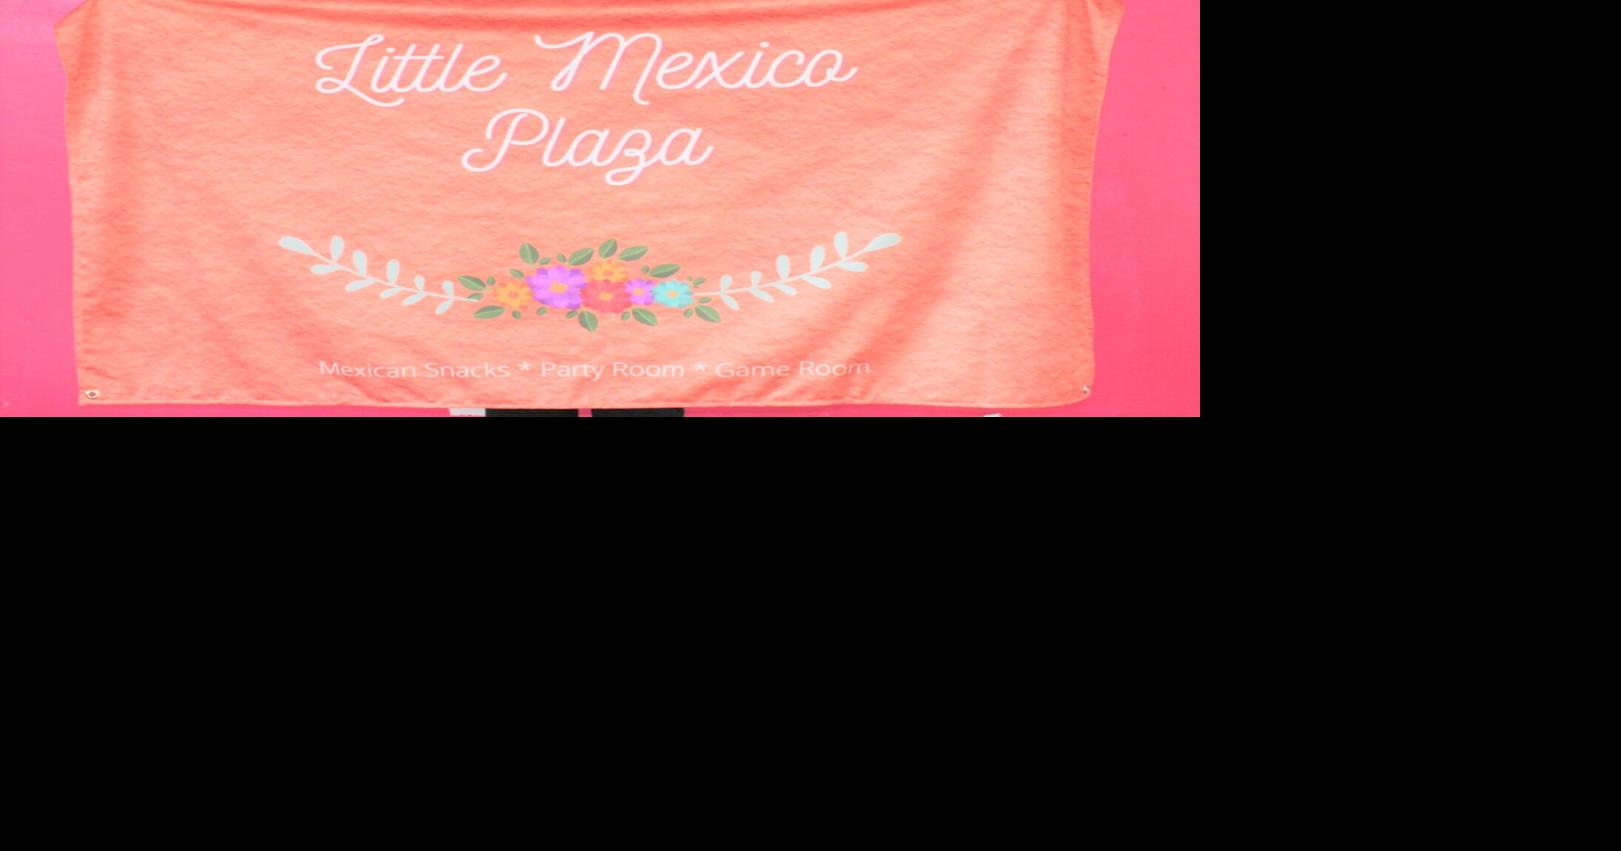 Inauguración del Little Mexico Plaza en Rusk |  Mensajes